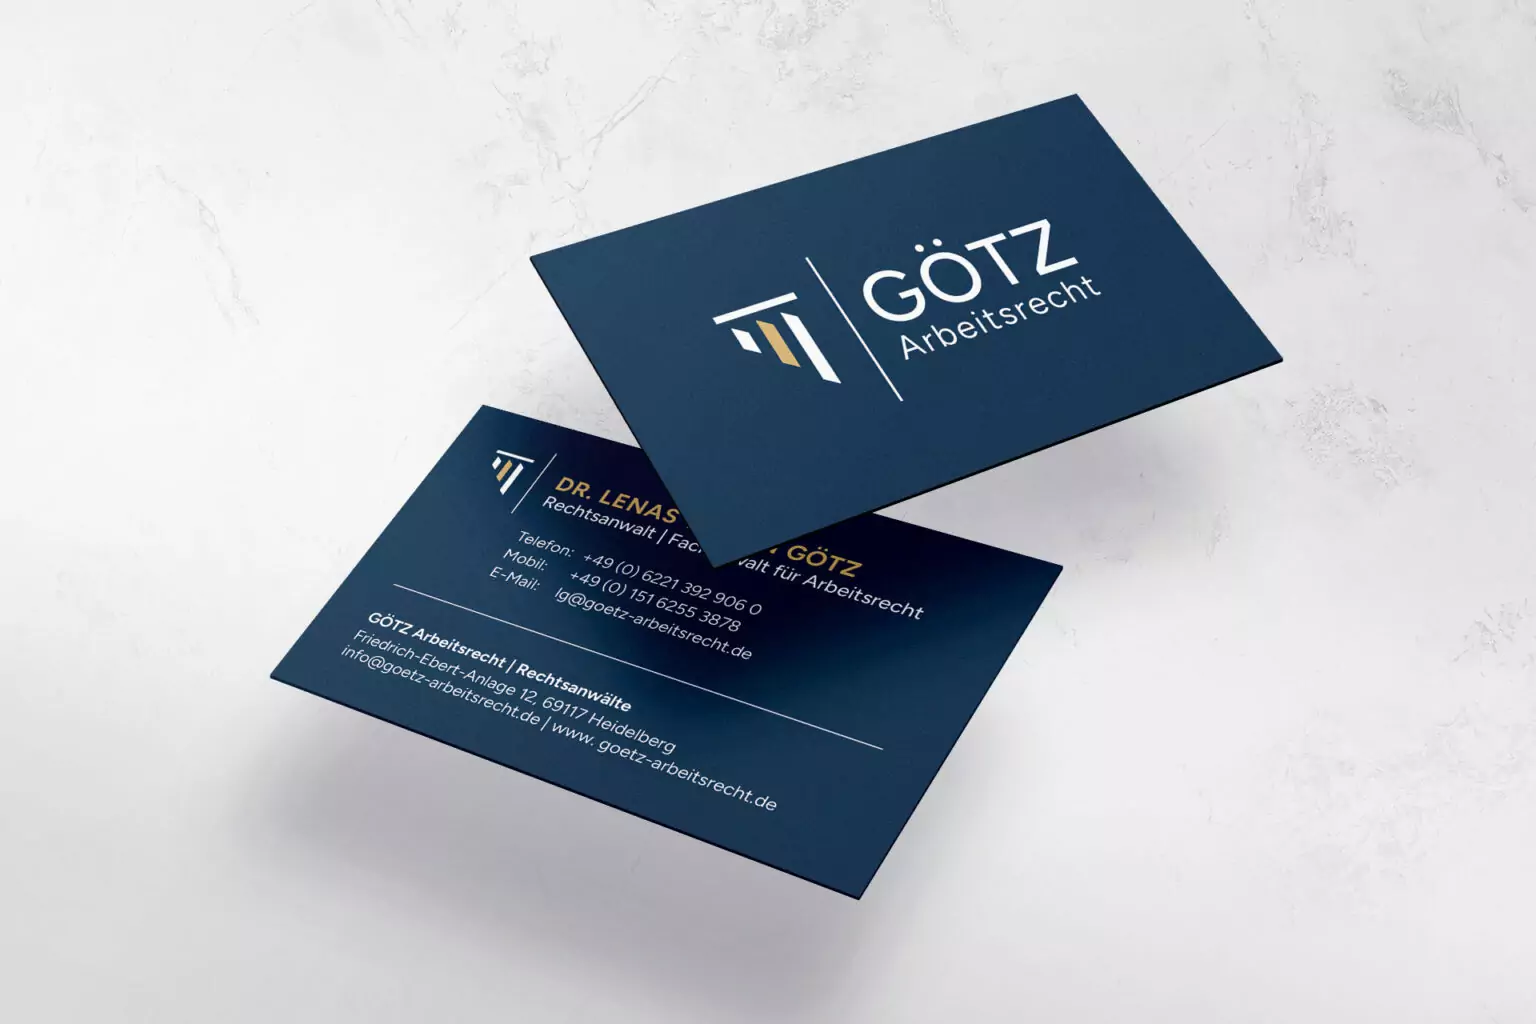 marketing-agentur-dresden-referenz-goetz-arbeitsrecht-visitenkarten-1536x1024